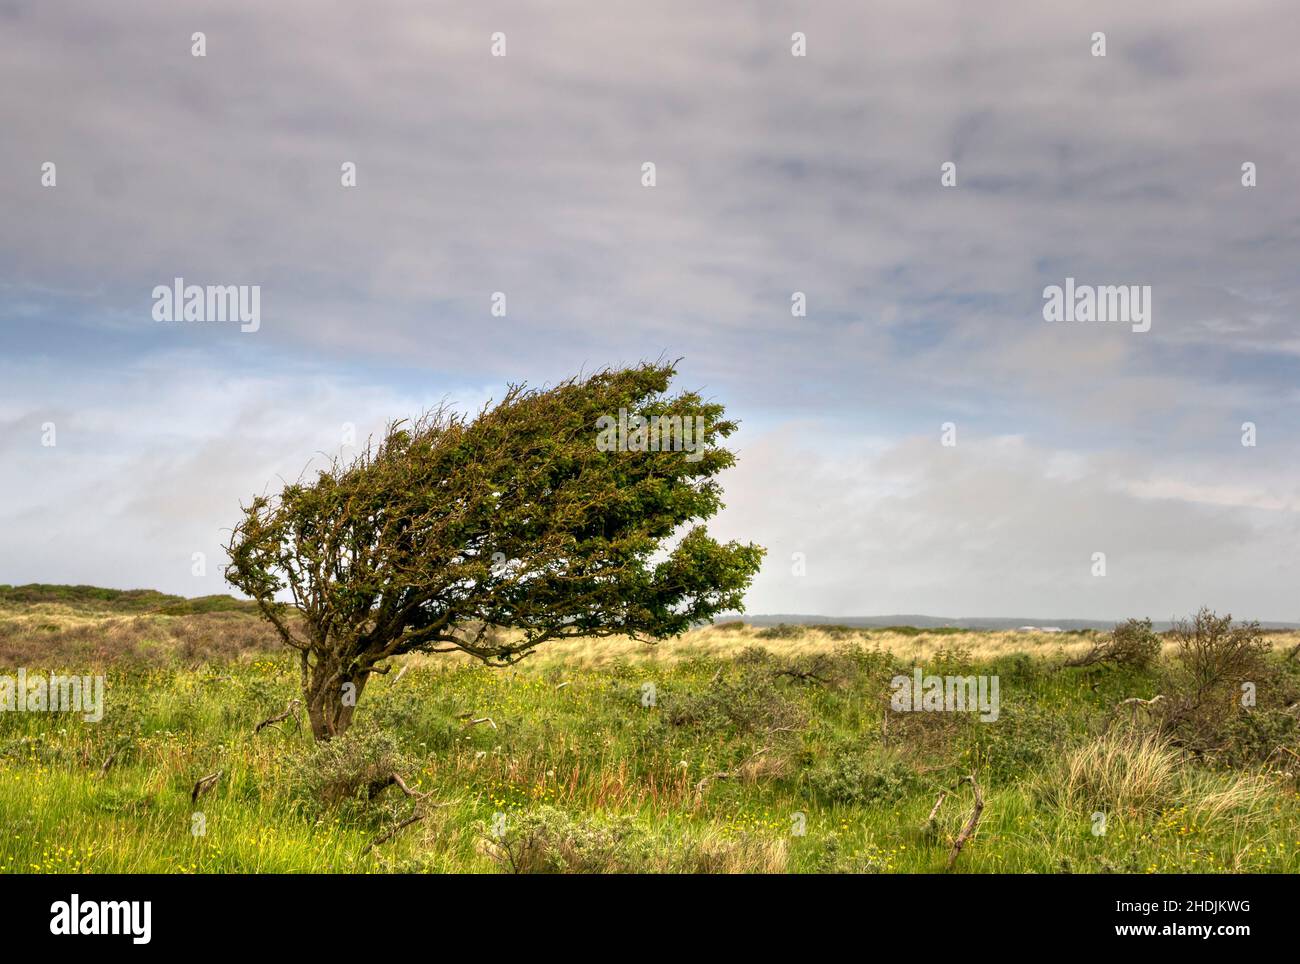 busch, jutland, windswept trees, buschs, jutlands Stock Photo